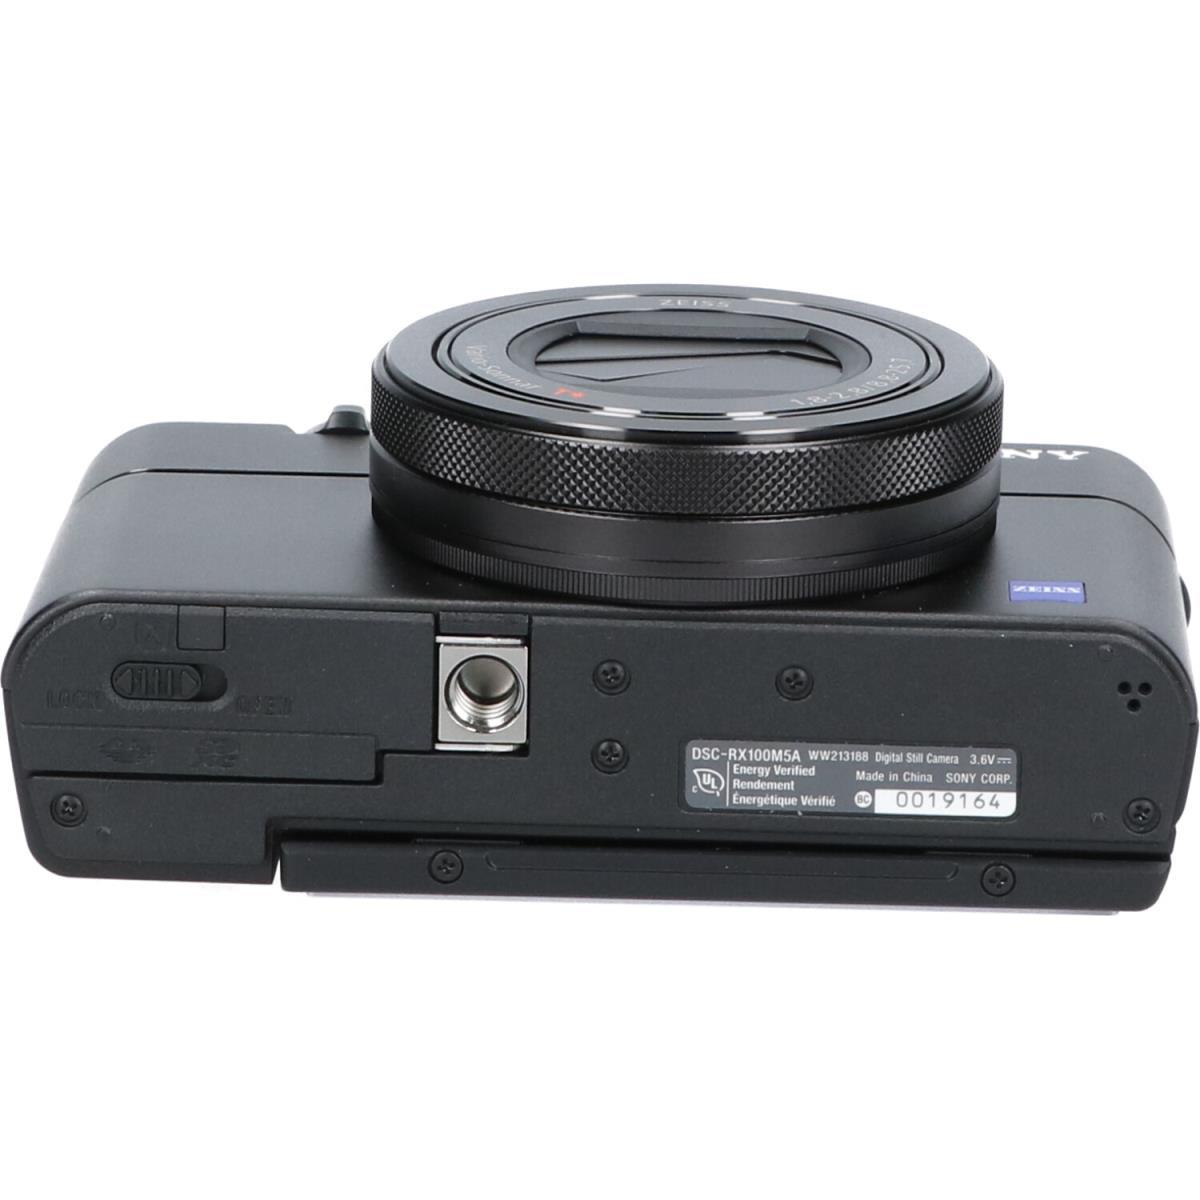 コンパクトデジタルカメラSONY DSC-RX100M5A